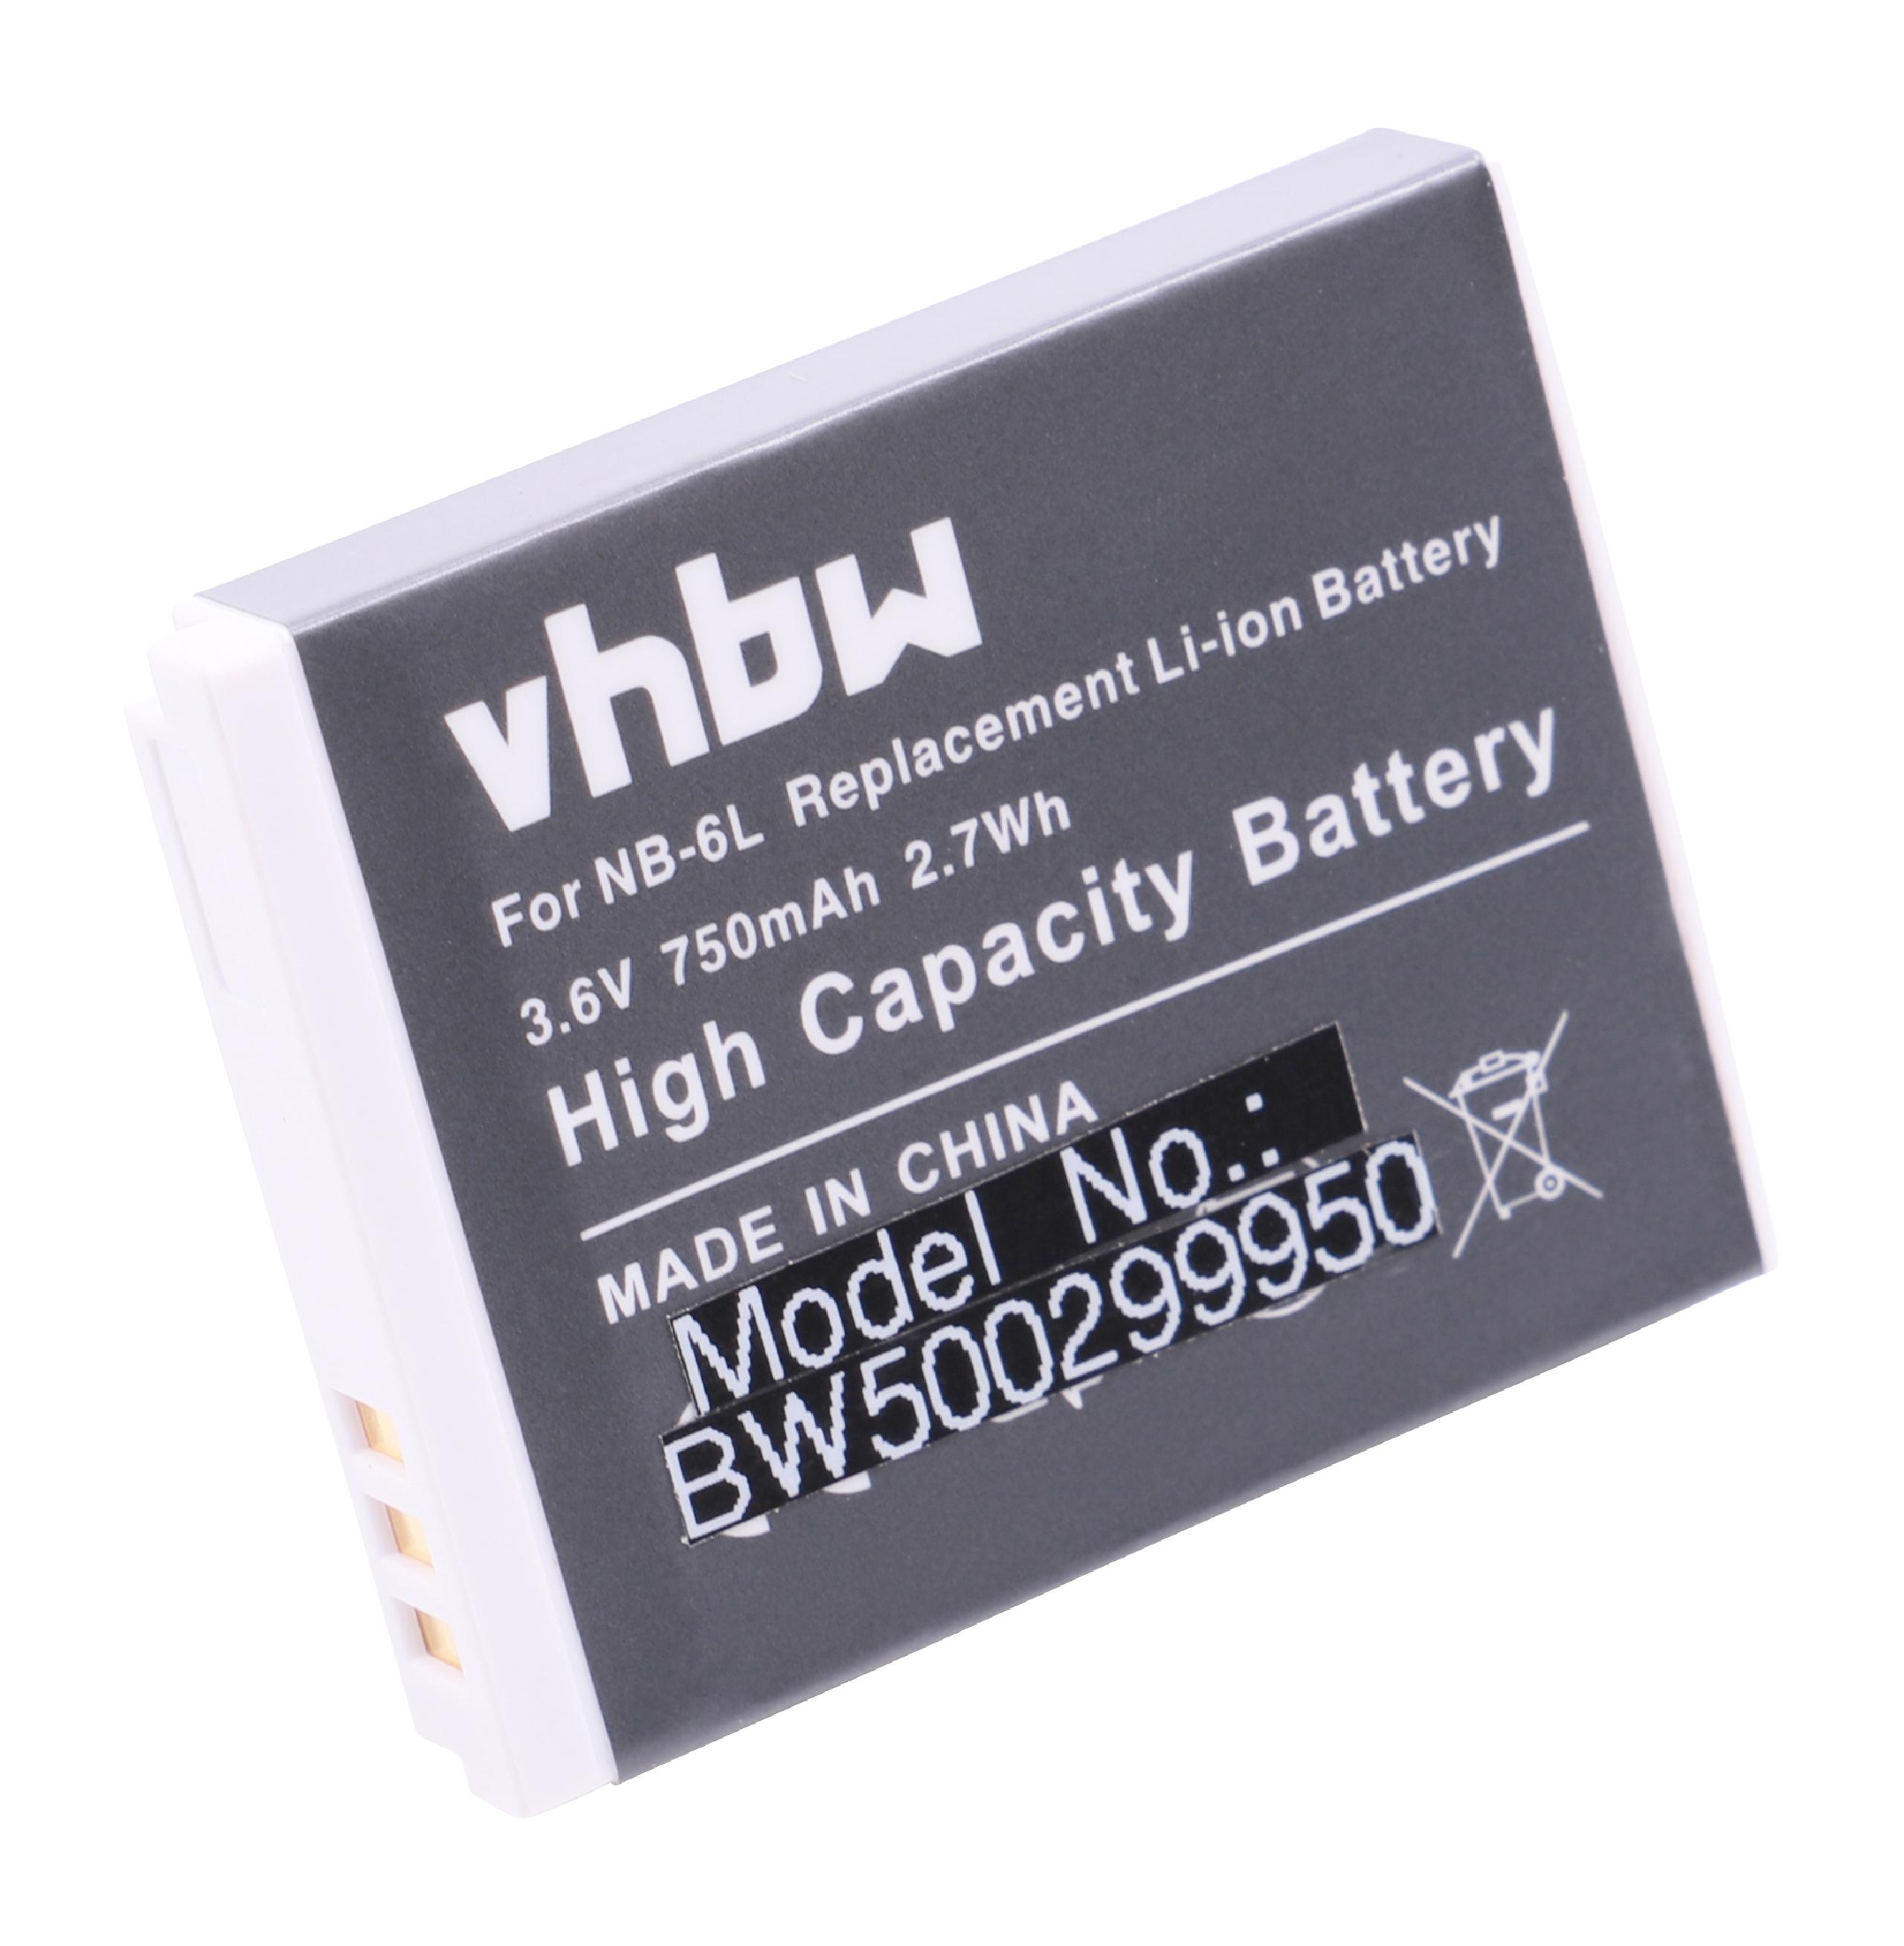 Batterie remplace Canon NB-6L, NB-6LH pour appareil photo - 750mAh 3,6V Li-ion